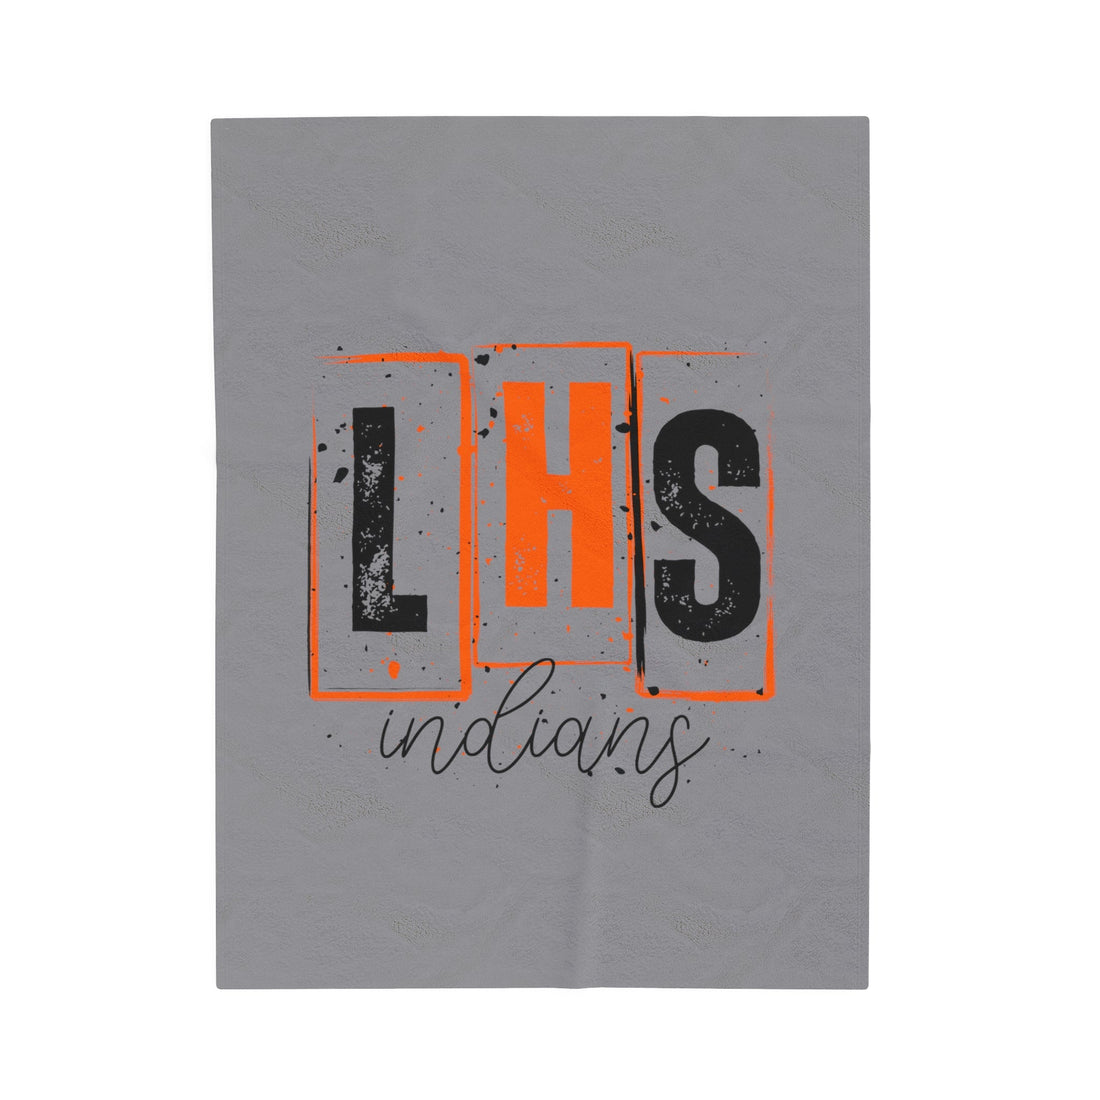 LHS Indians Velveteen Plush Blanket - All Over Prints - Positively Sassy - LHS Indians Velveteen Plush Blanket